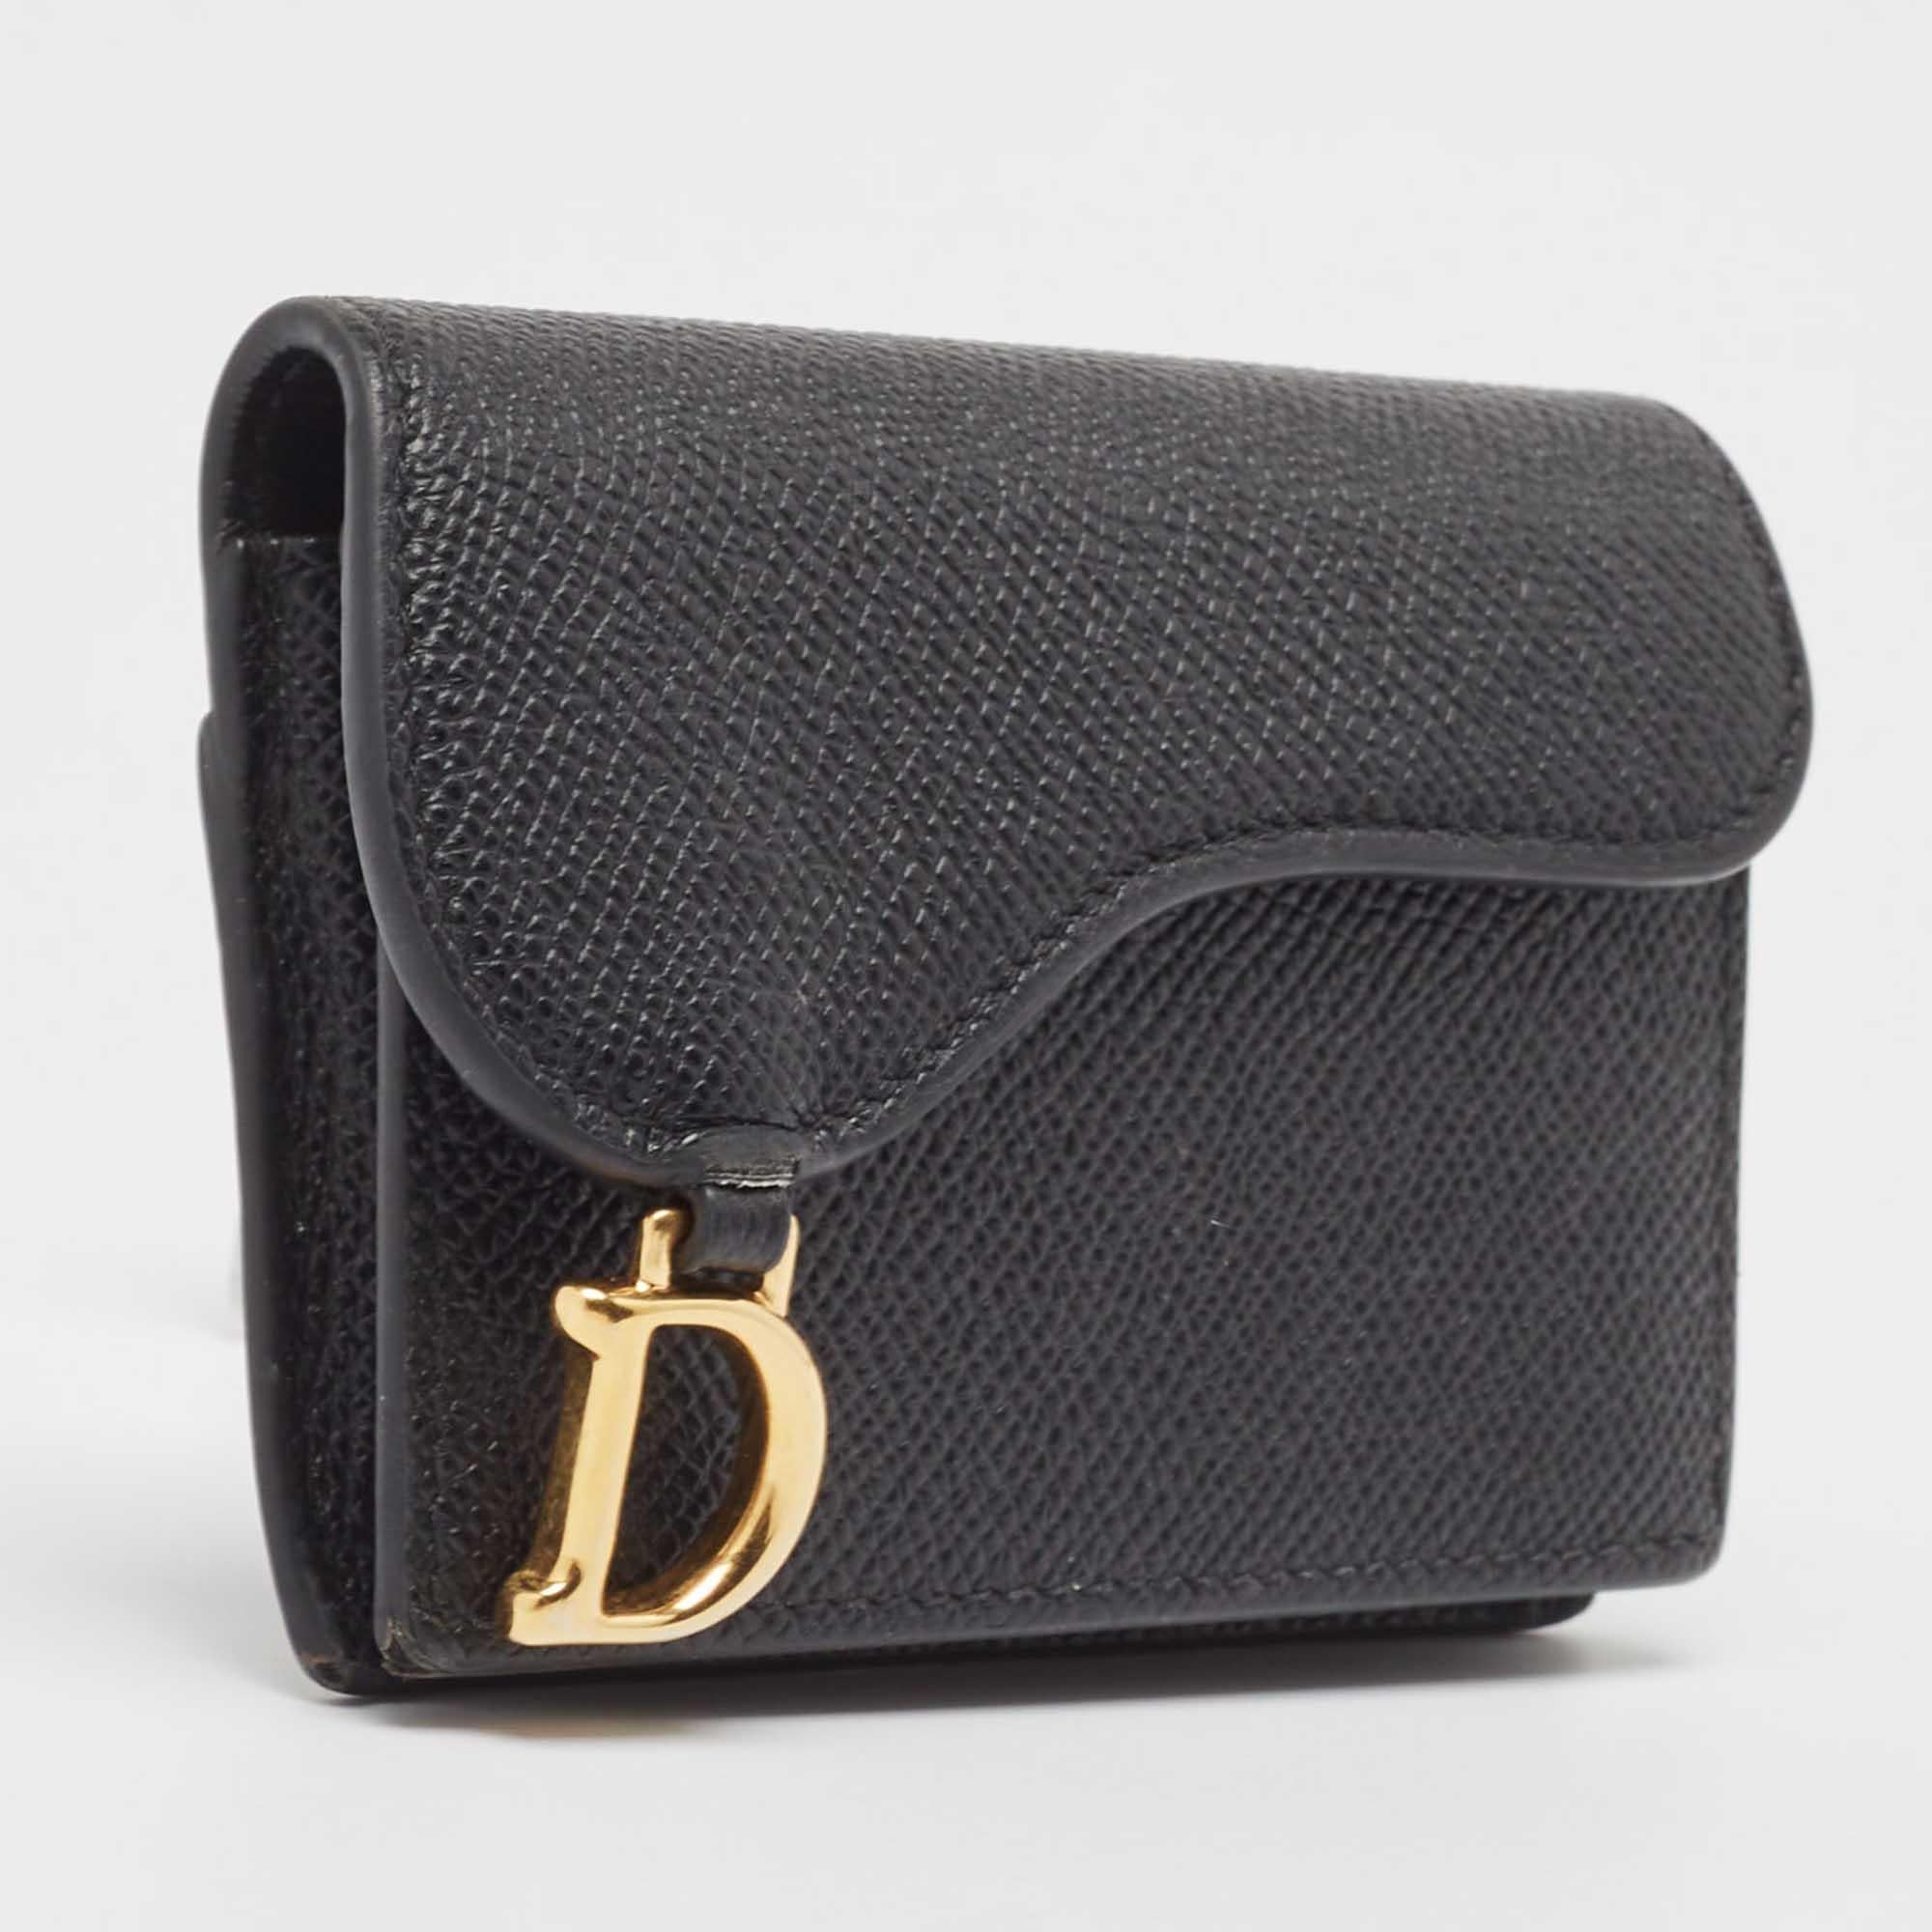 Das aus schwarzem Leder gefertigte Kartenetui von Dior ist mit mehreren Fächern ausgestattet, die durch eine Klappe gesichert werden, die von der kultigen Saddle-Tasche übernommen wurde. Abgerundet wird die Kreation durch den D-Charme auf der